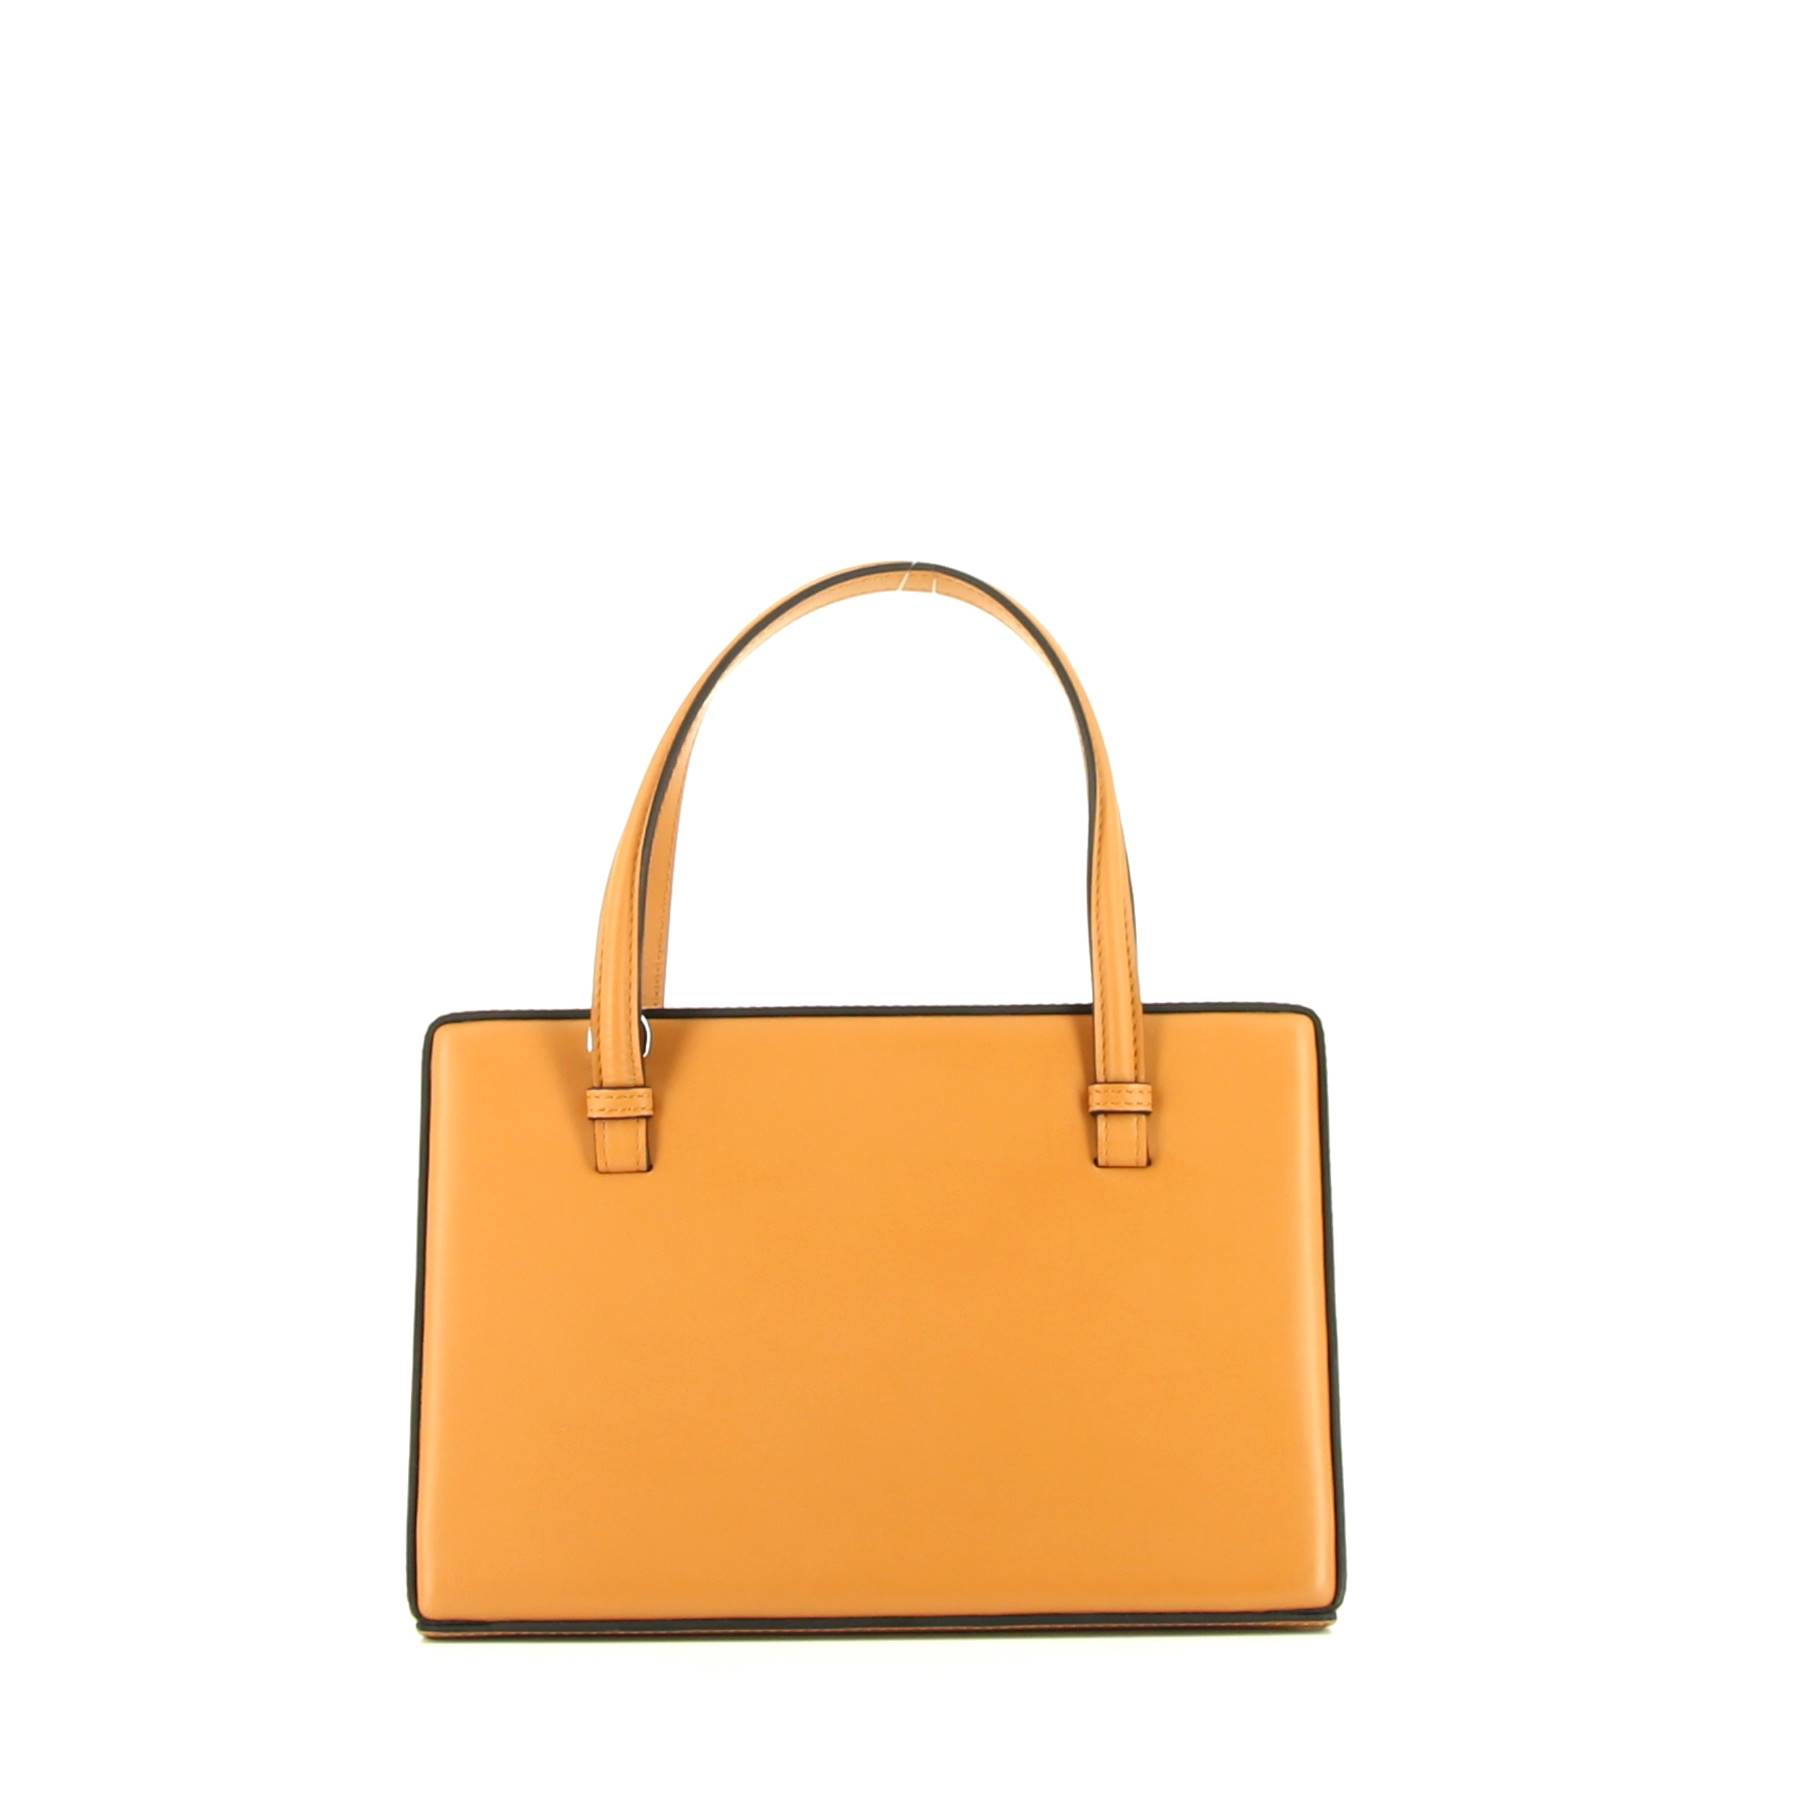 Postal Bag Handbag In Gold Leather